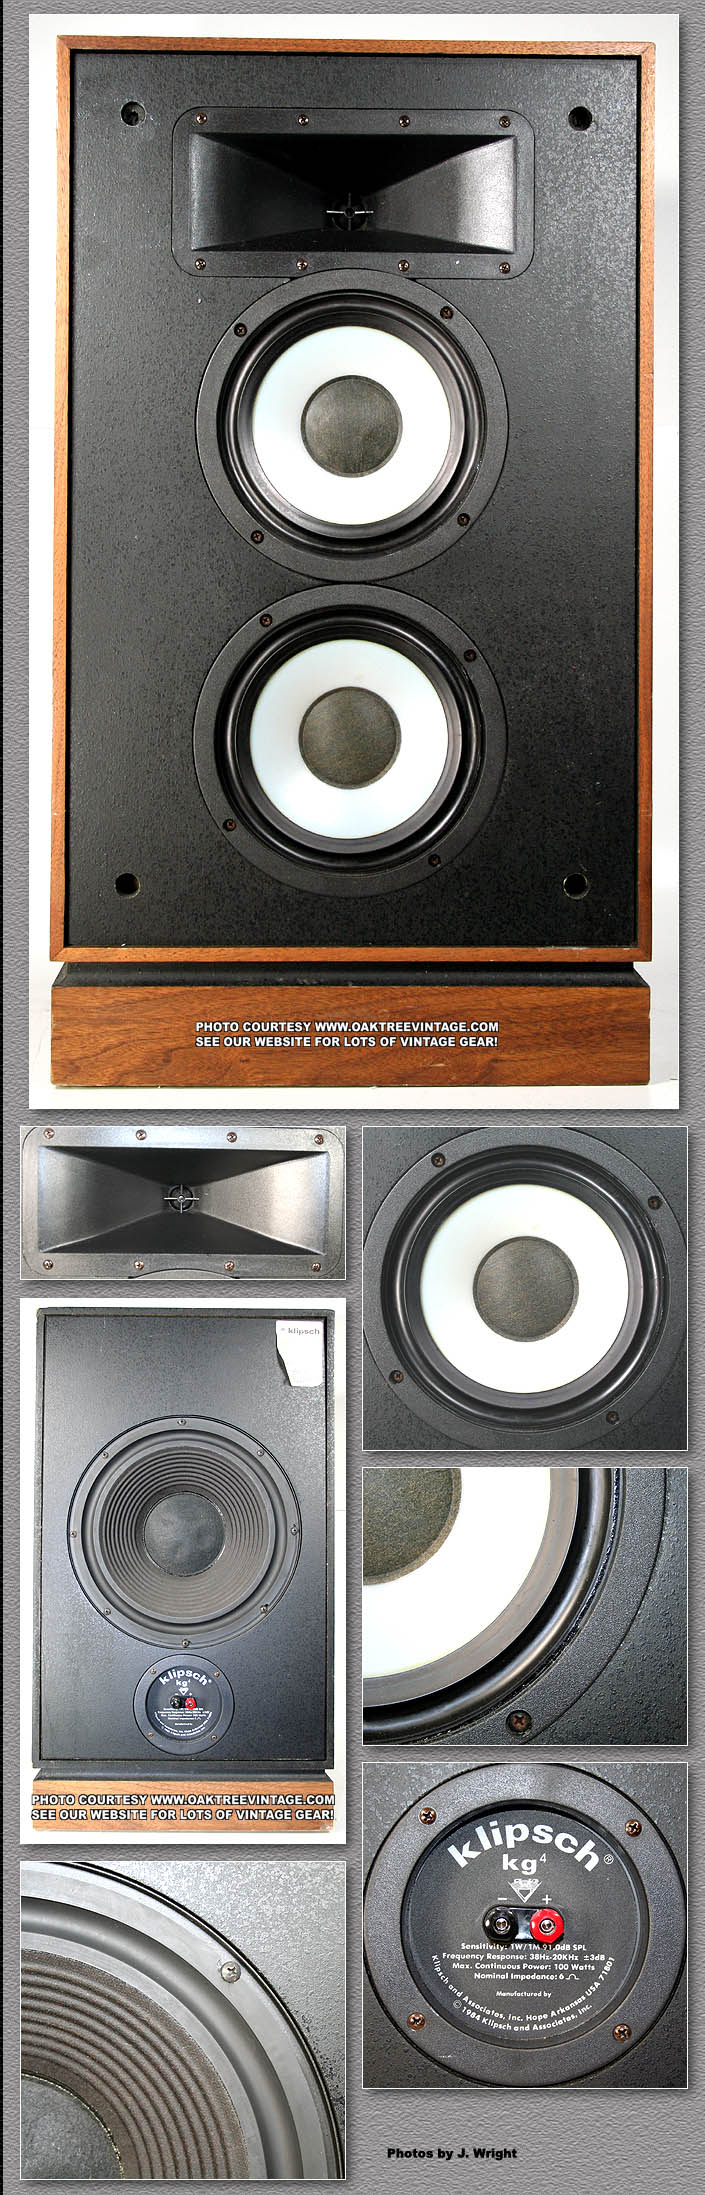 klipsch speaker parts